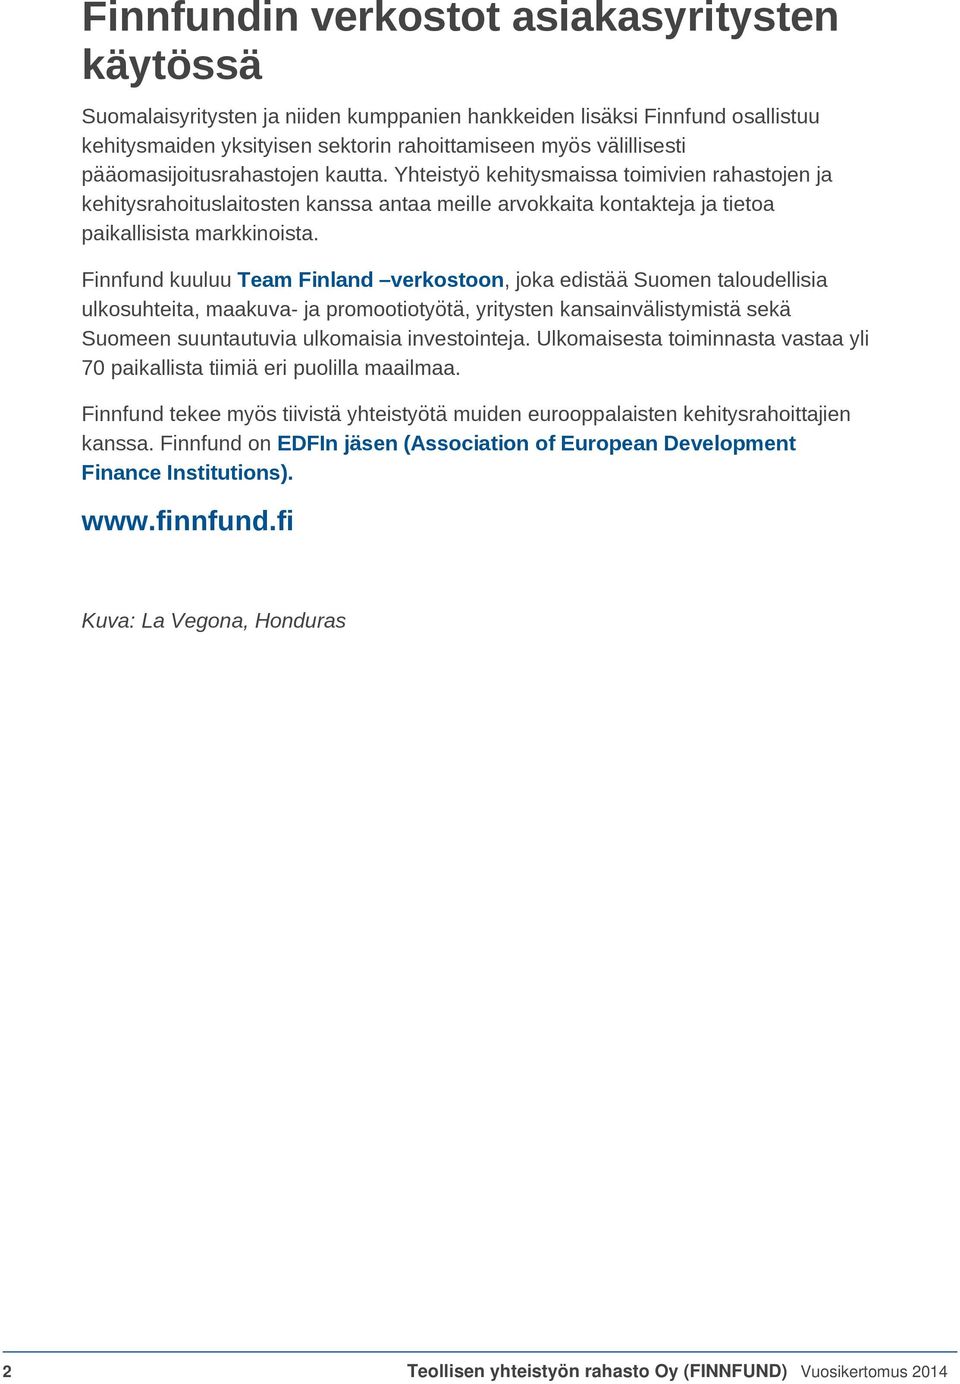 Finnfund kuuluu Team Finland verkostoon, joka edistää Suomen taloudellisia ulkosuhteita, maakuva- ja promootiotyötä, yritysten kansainvälistymistä sekä Suomeen suuntautuvia ulkomaisia investointeja.